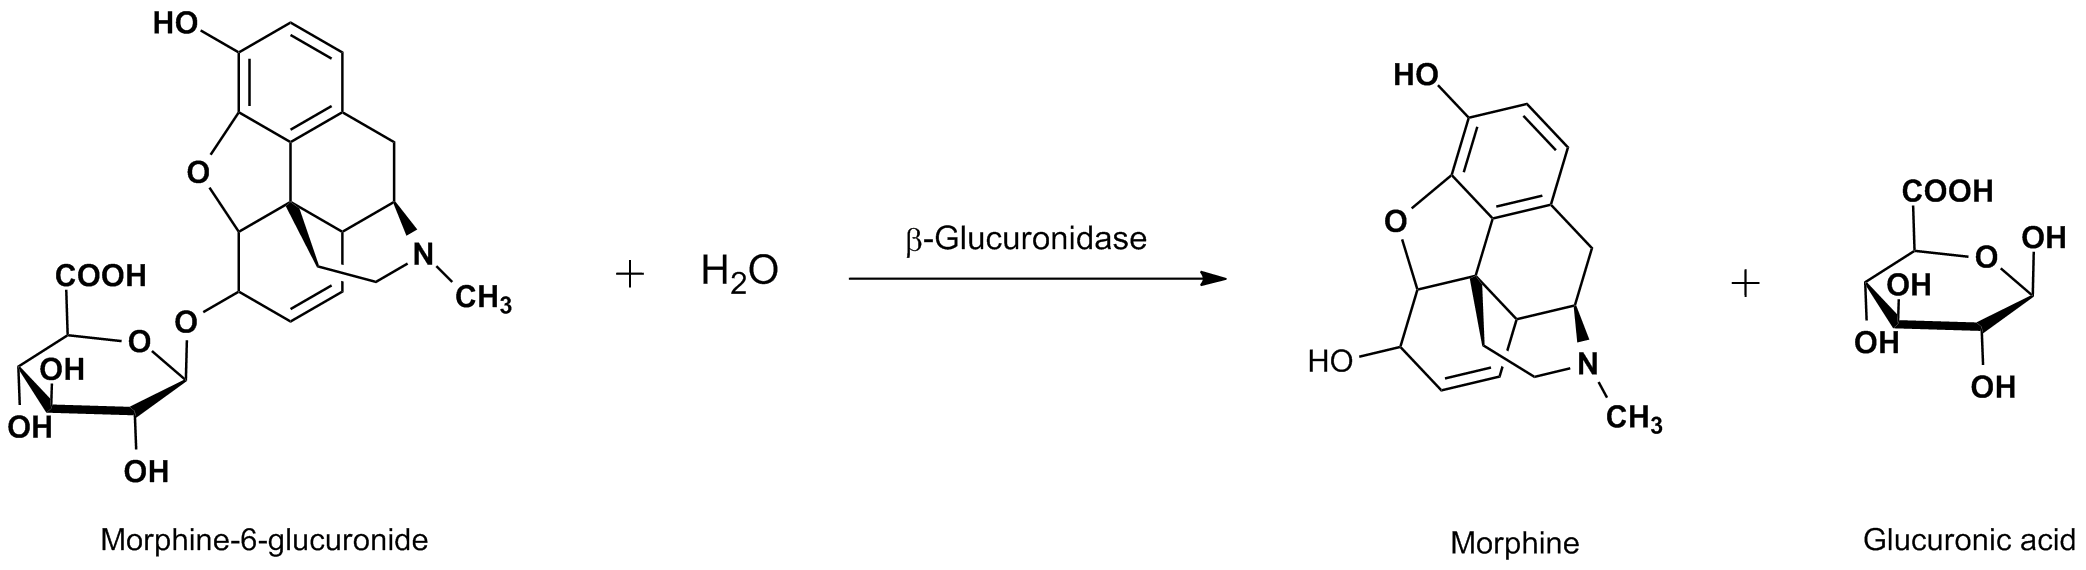 Beta-Glucuronidase Hydrolysis Reaction Mechanism